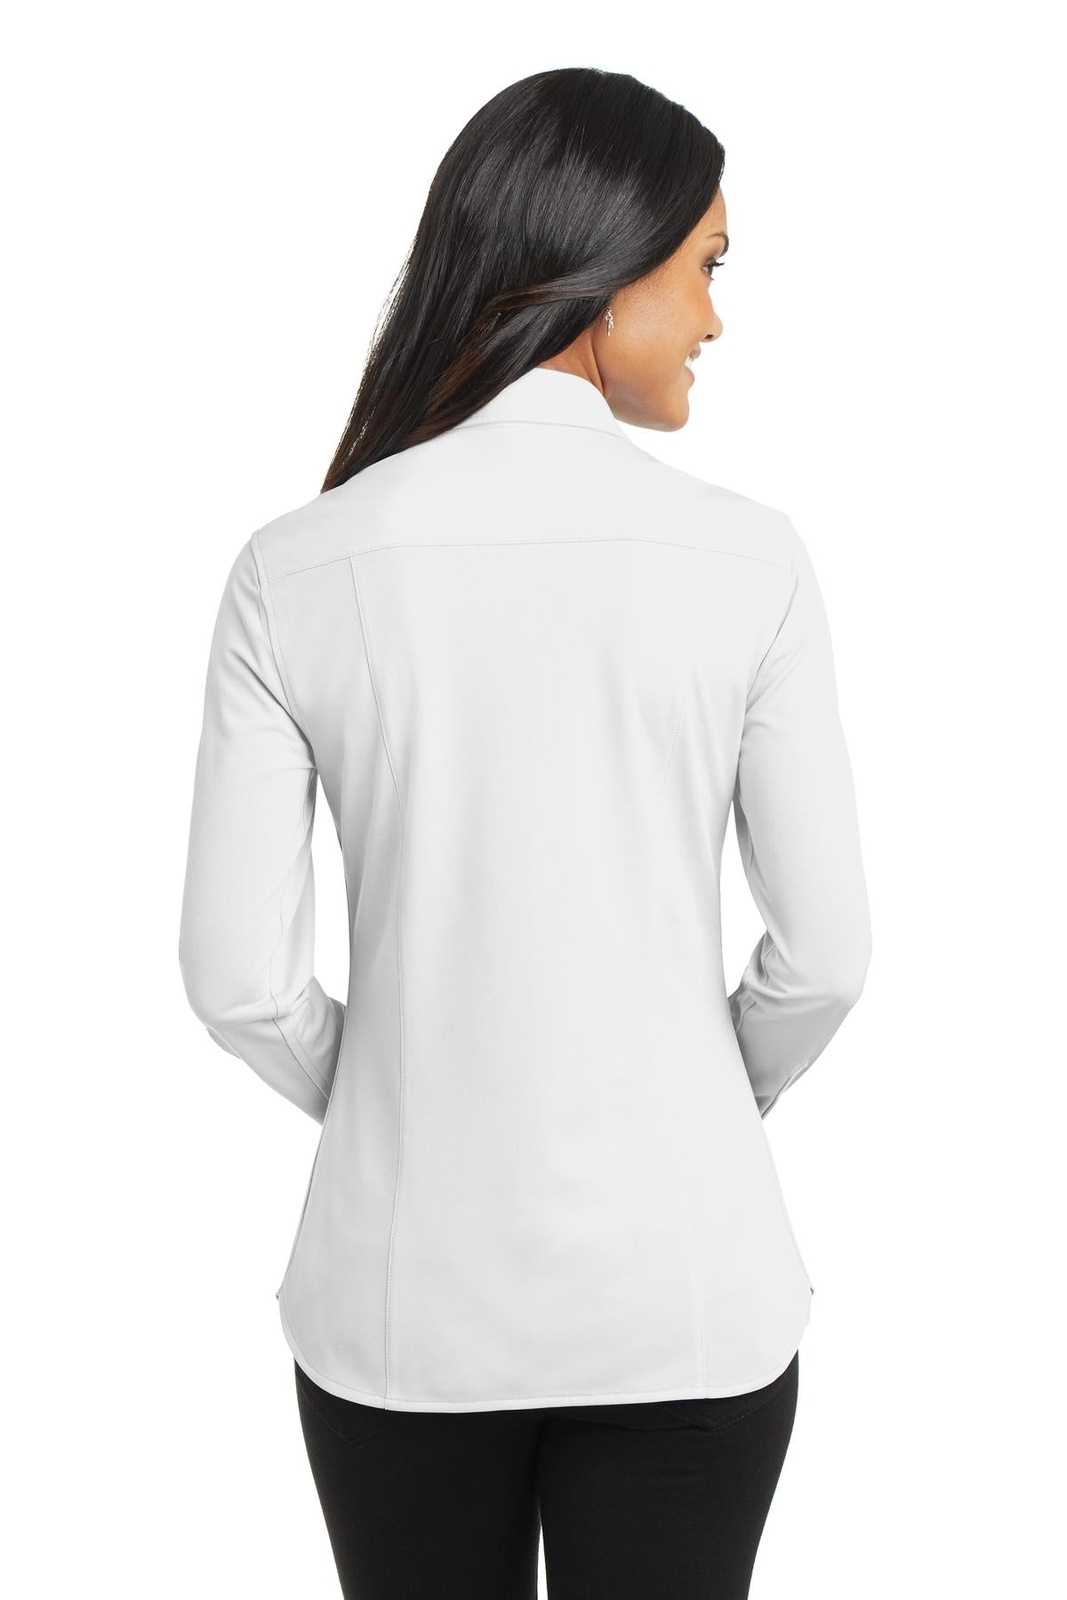 Port Authority L570 Ladies Dimension Knit Dress Shirt - White - HIT a Double - 2